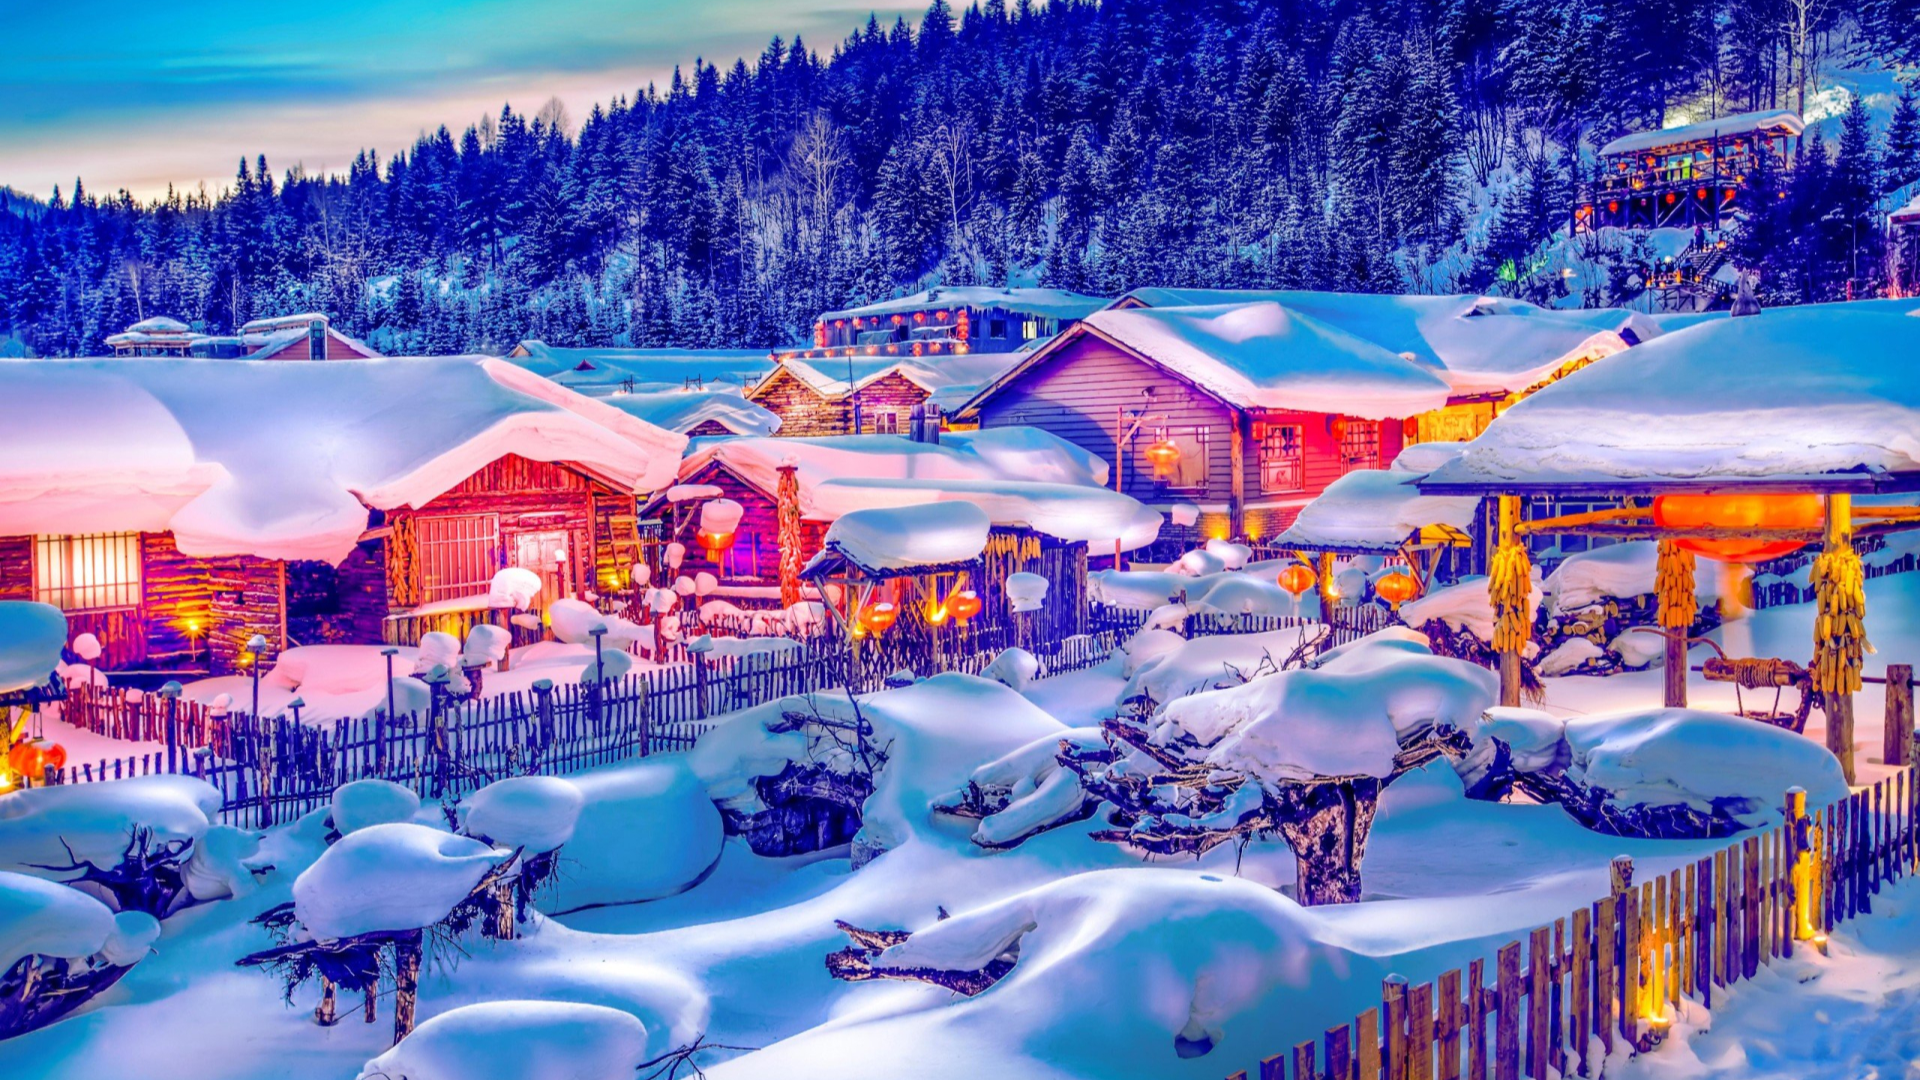 Ngôi làng chìm trong tuyết trắng đẹp như mơ ở Trung Quốc